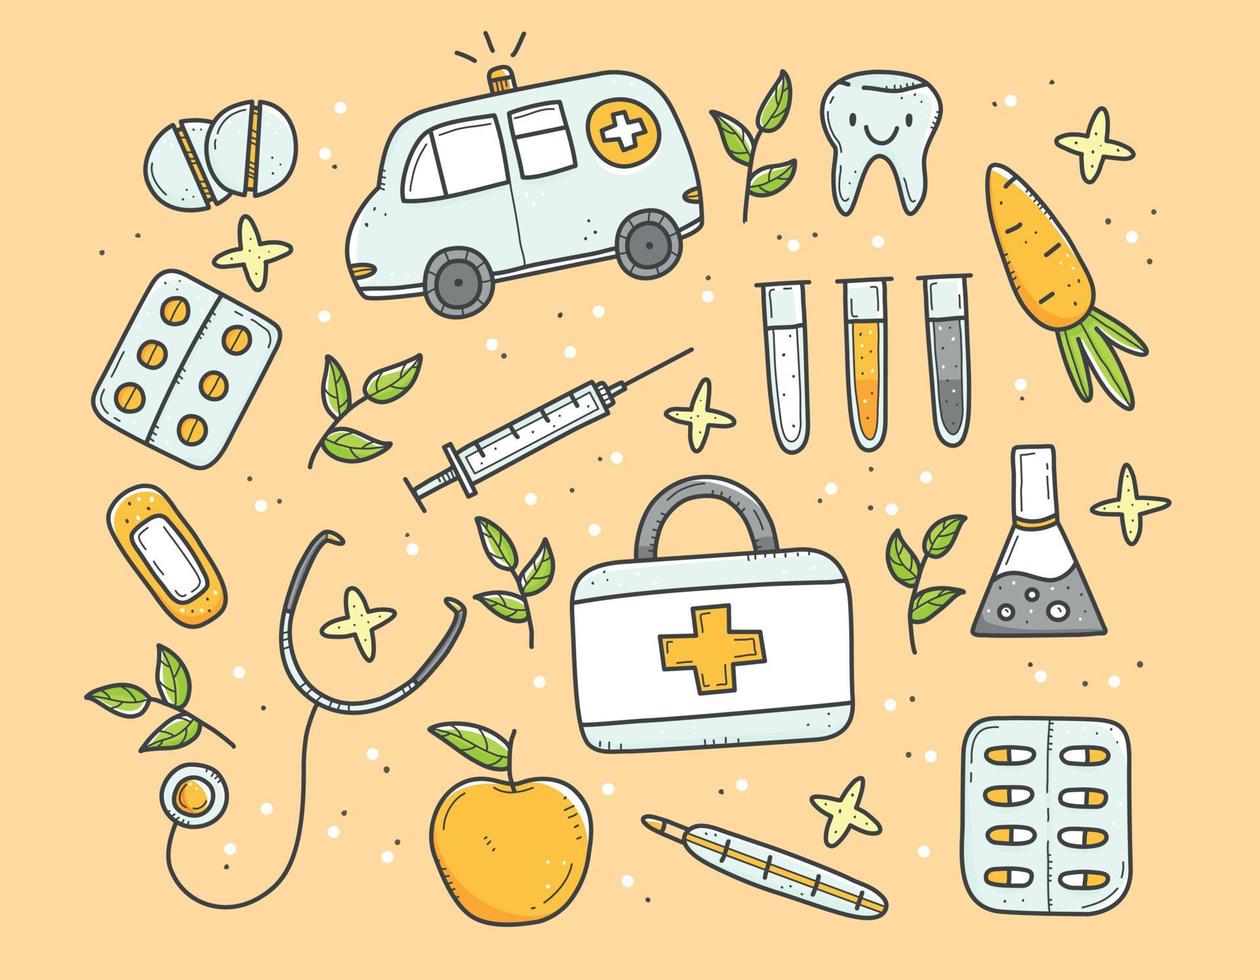 uppsättning av mångfärgade medicinska föremål i doodle stil, termometer, spruta, kolv, piller, vitaminer, ambulans. vektor färg doodle illustration isolerad på bakgrunden.